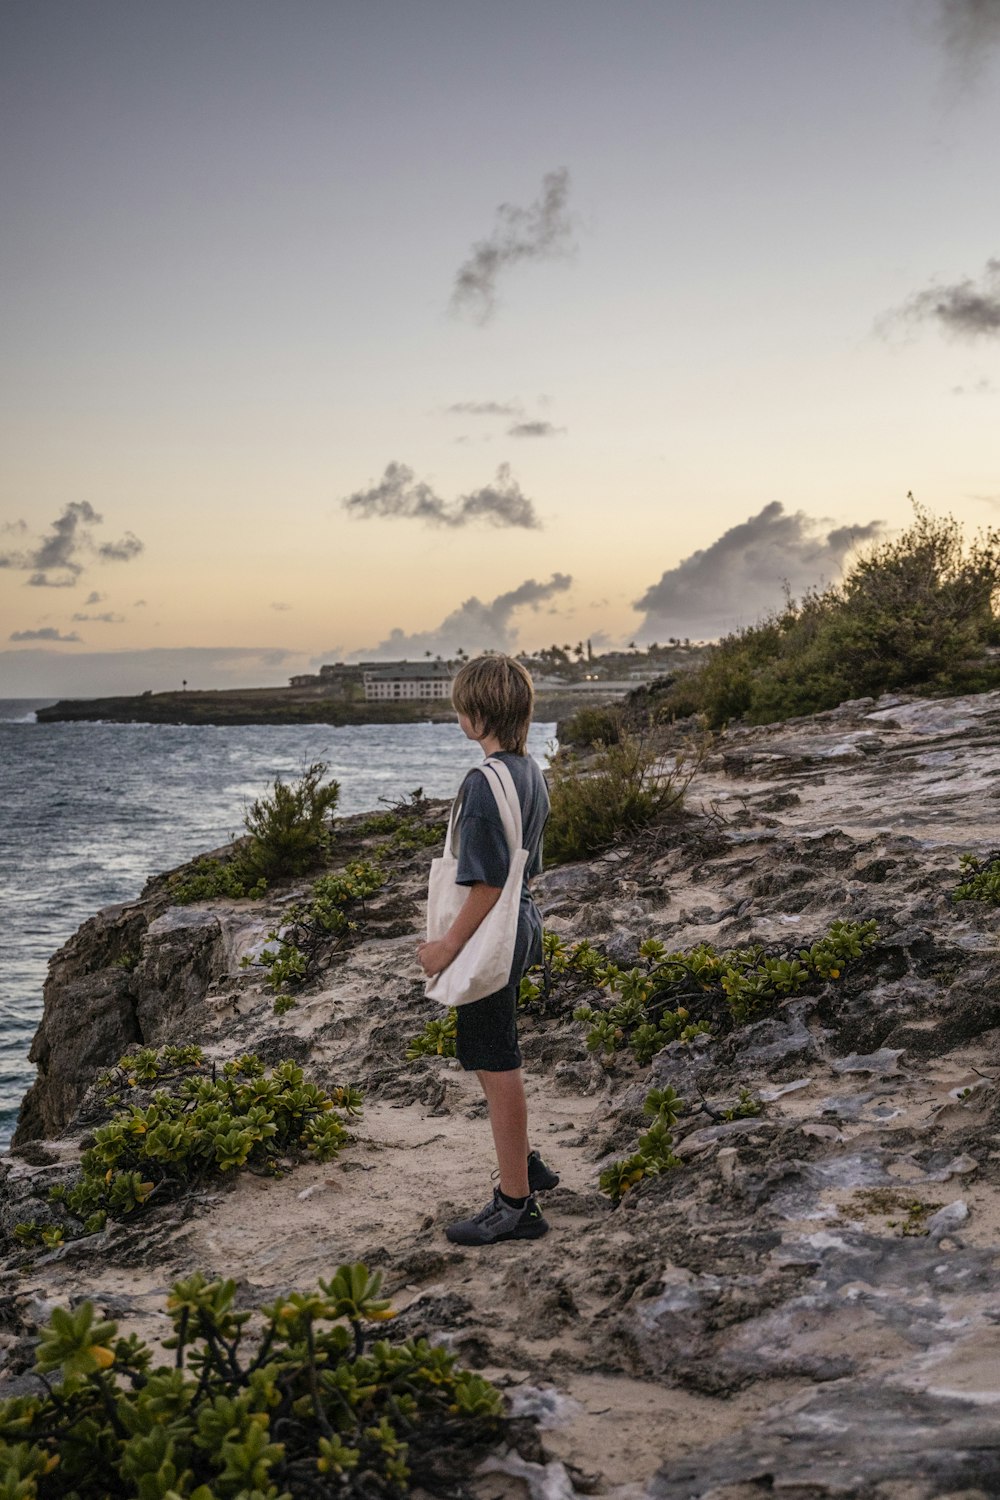 a boy standing on a rocky beach